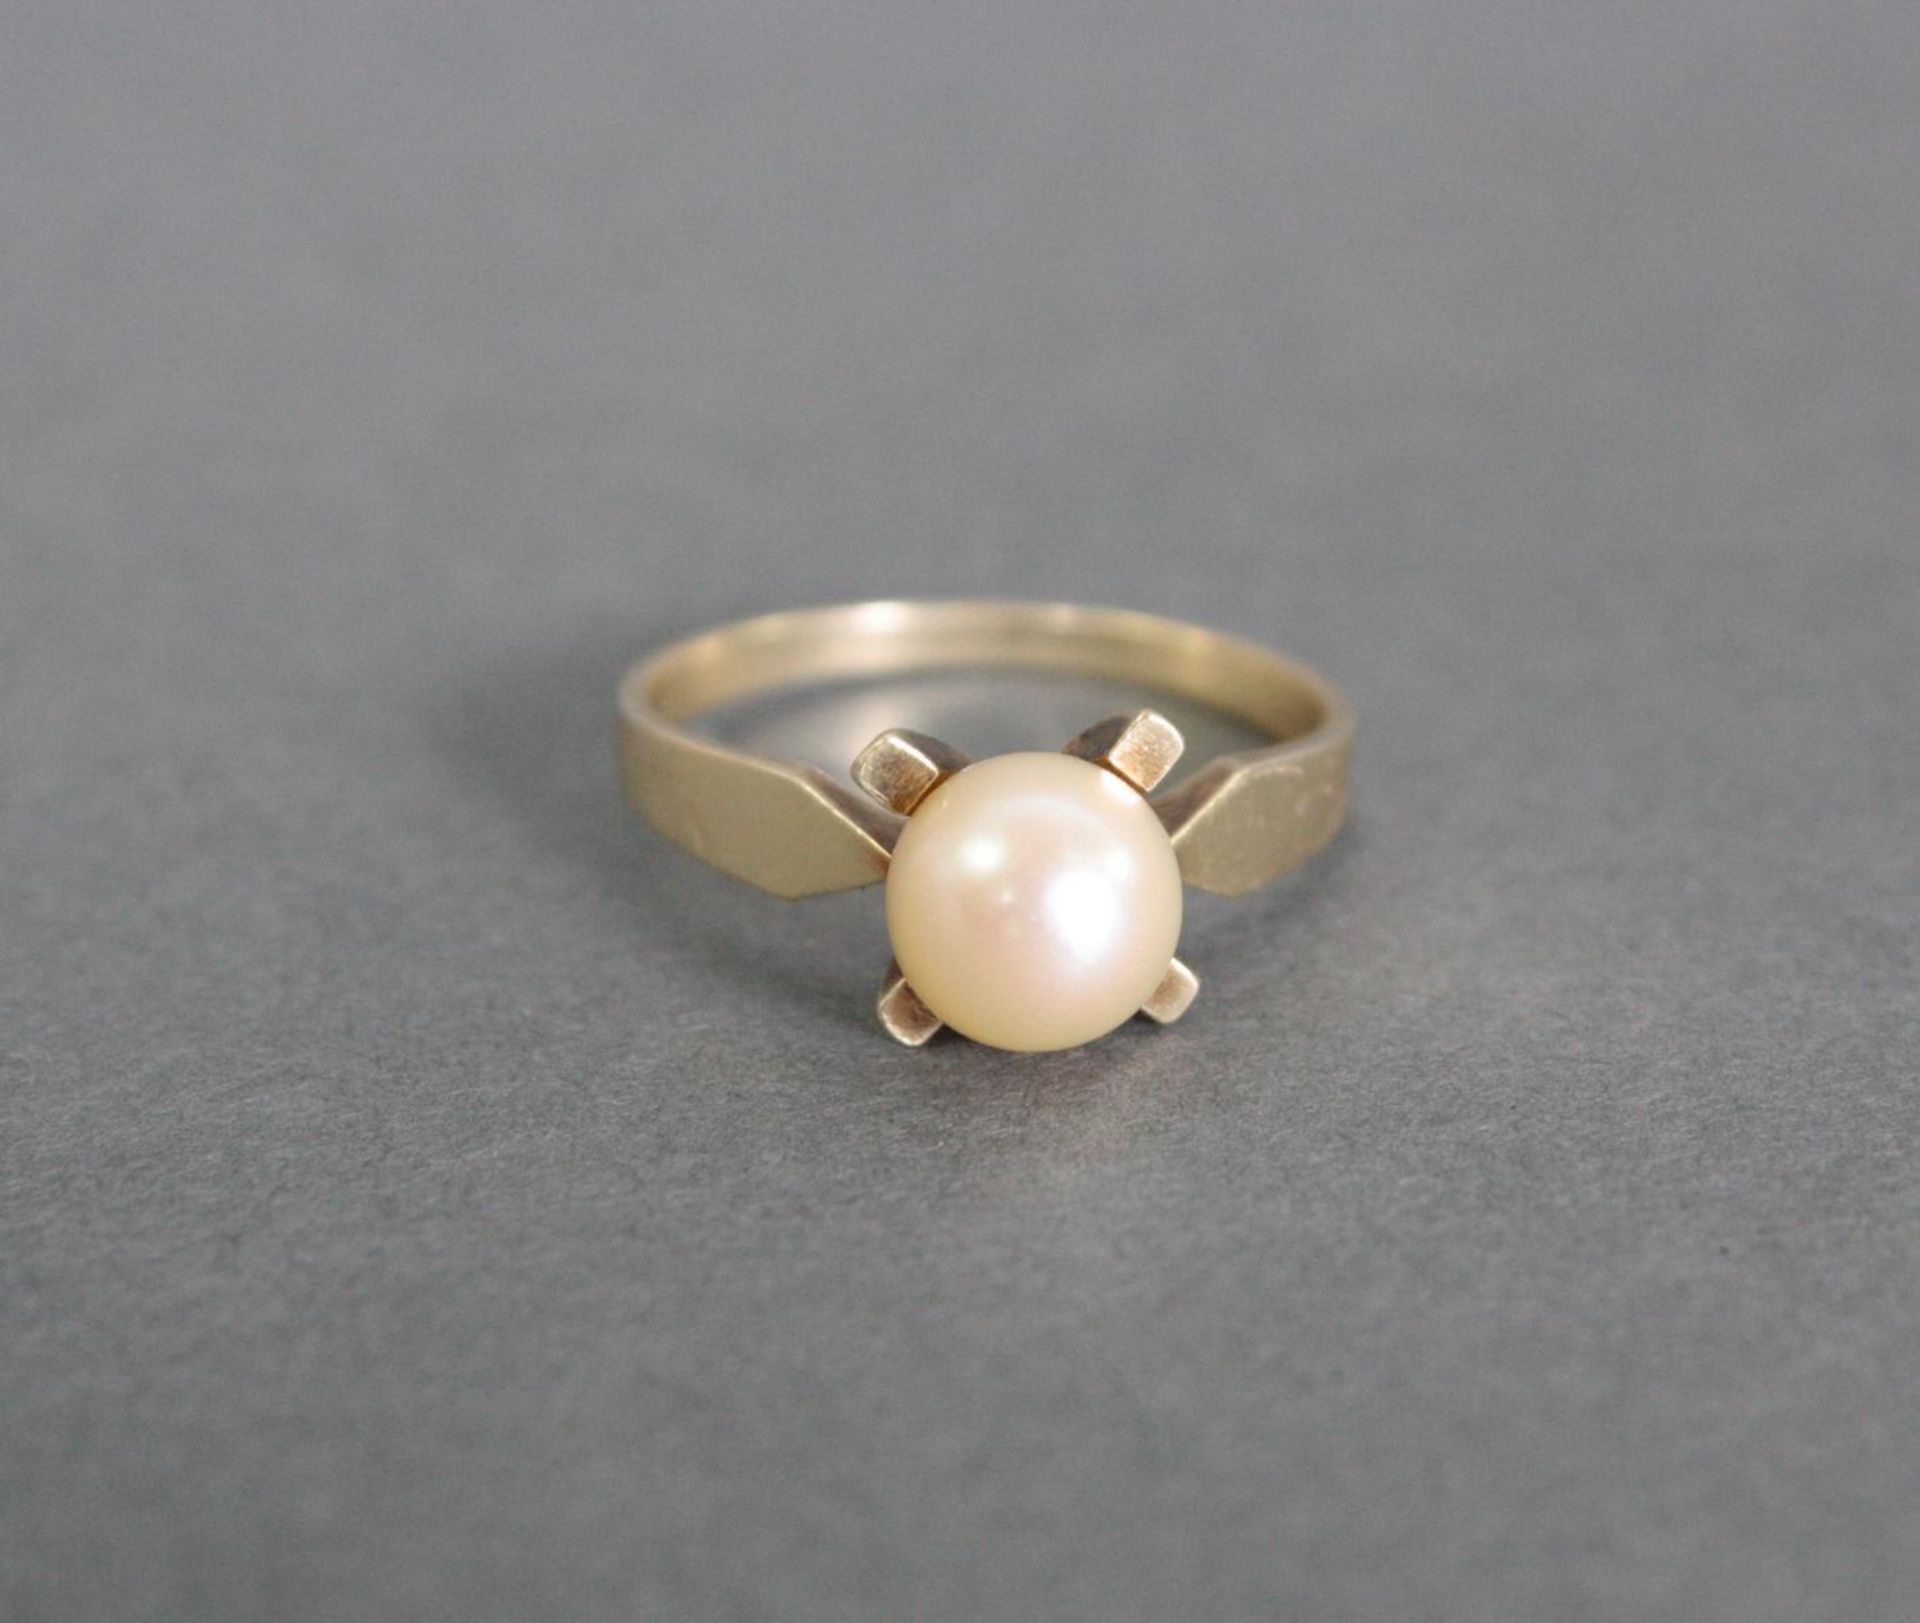 Damenring mit Perle, 14 Karat Gelbgold1 Perle Durchmesser 7,5 mm, Ringgröße 58, 3,4 g.